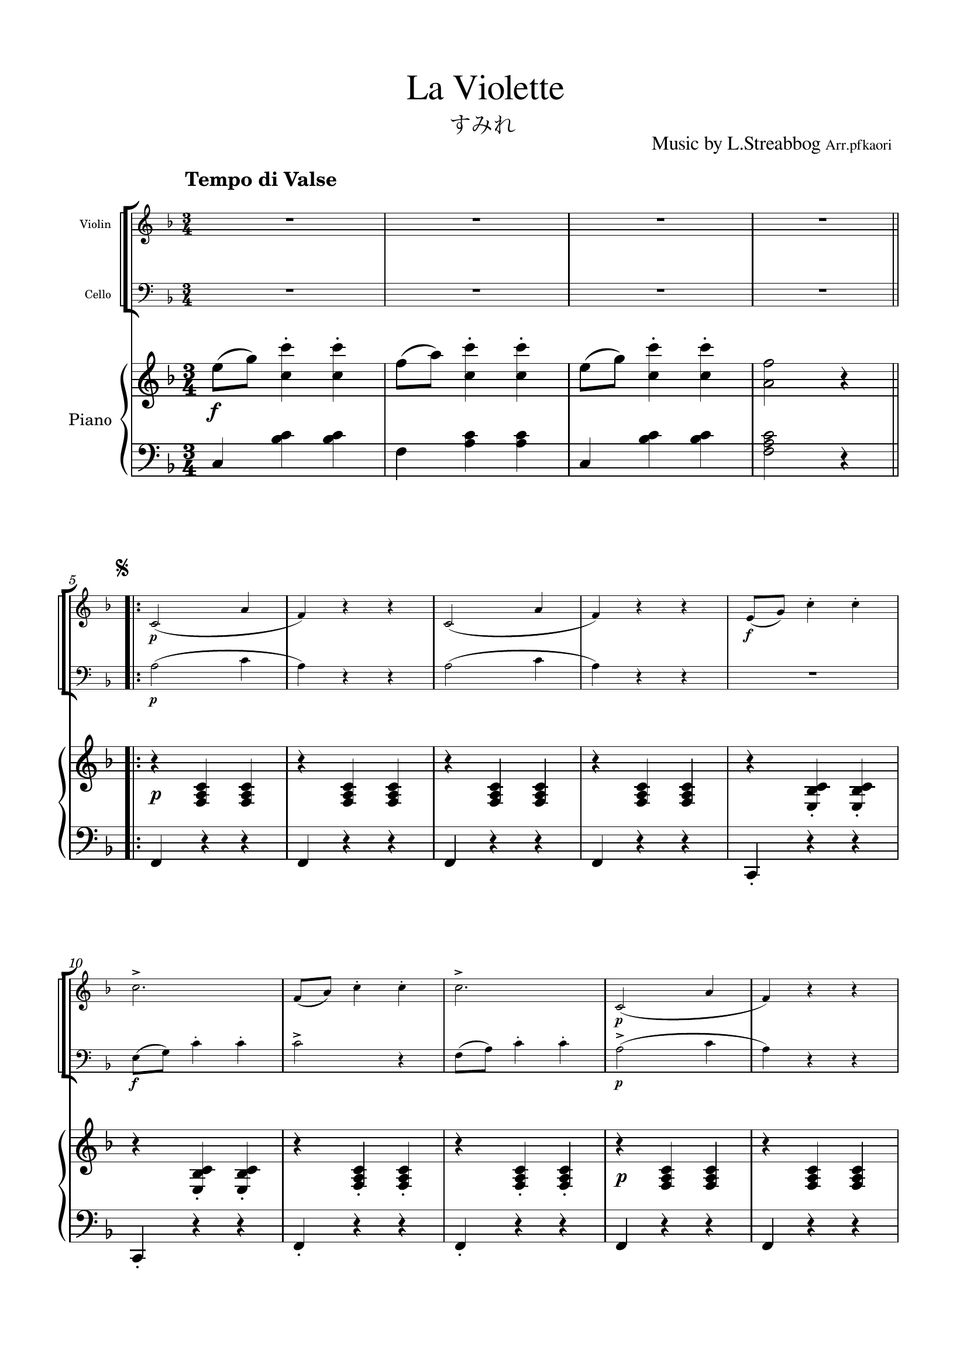 Strea bogg - La Violette (Piano trio / Violin & Cello) by pfkaori